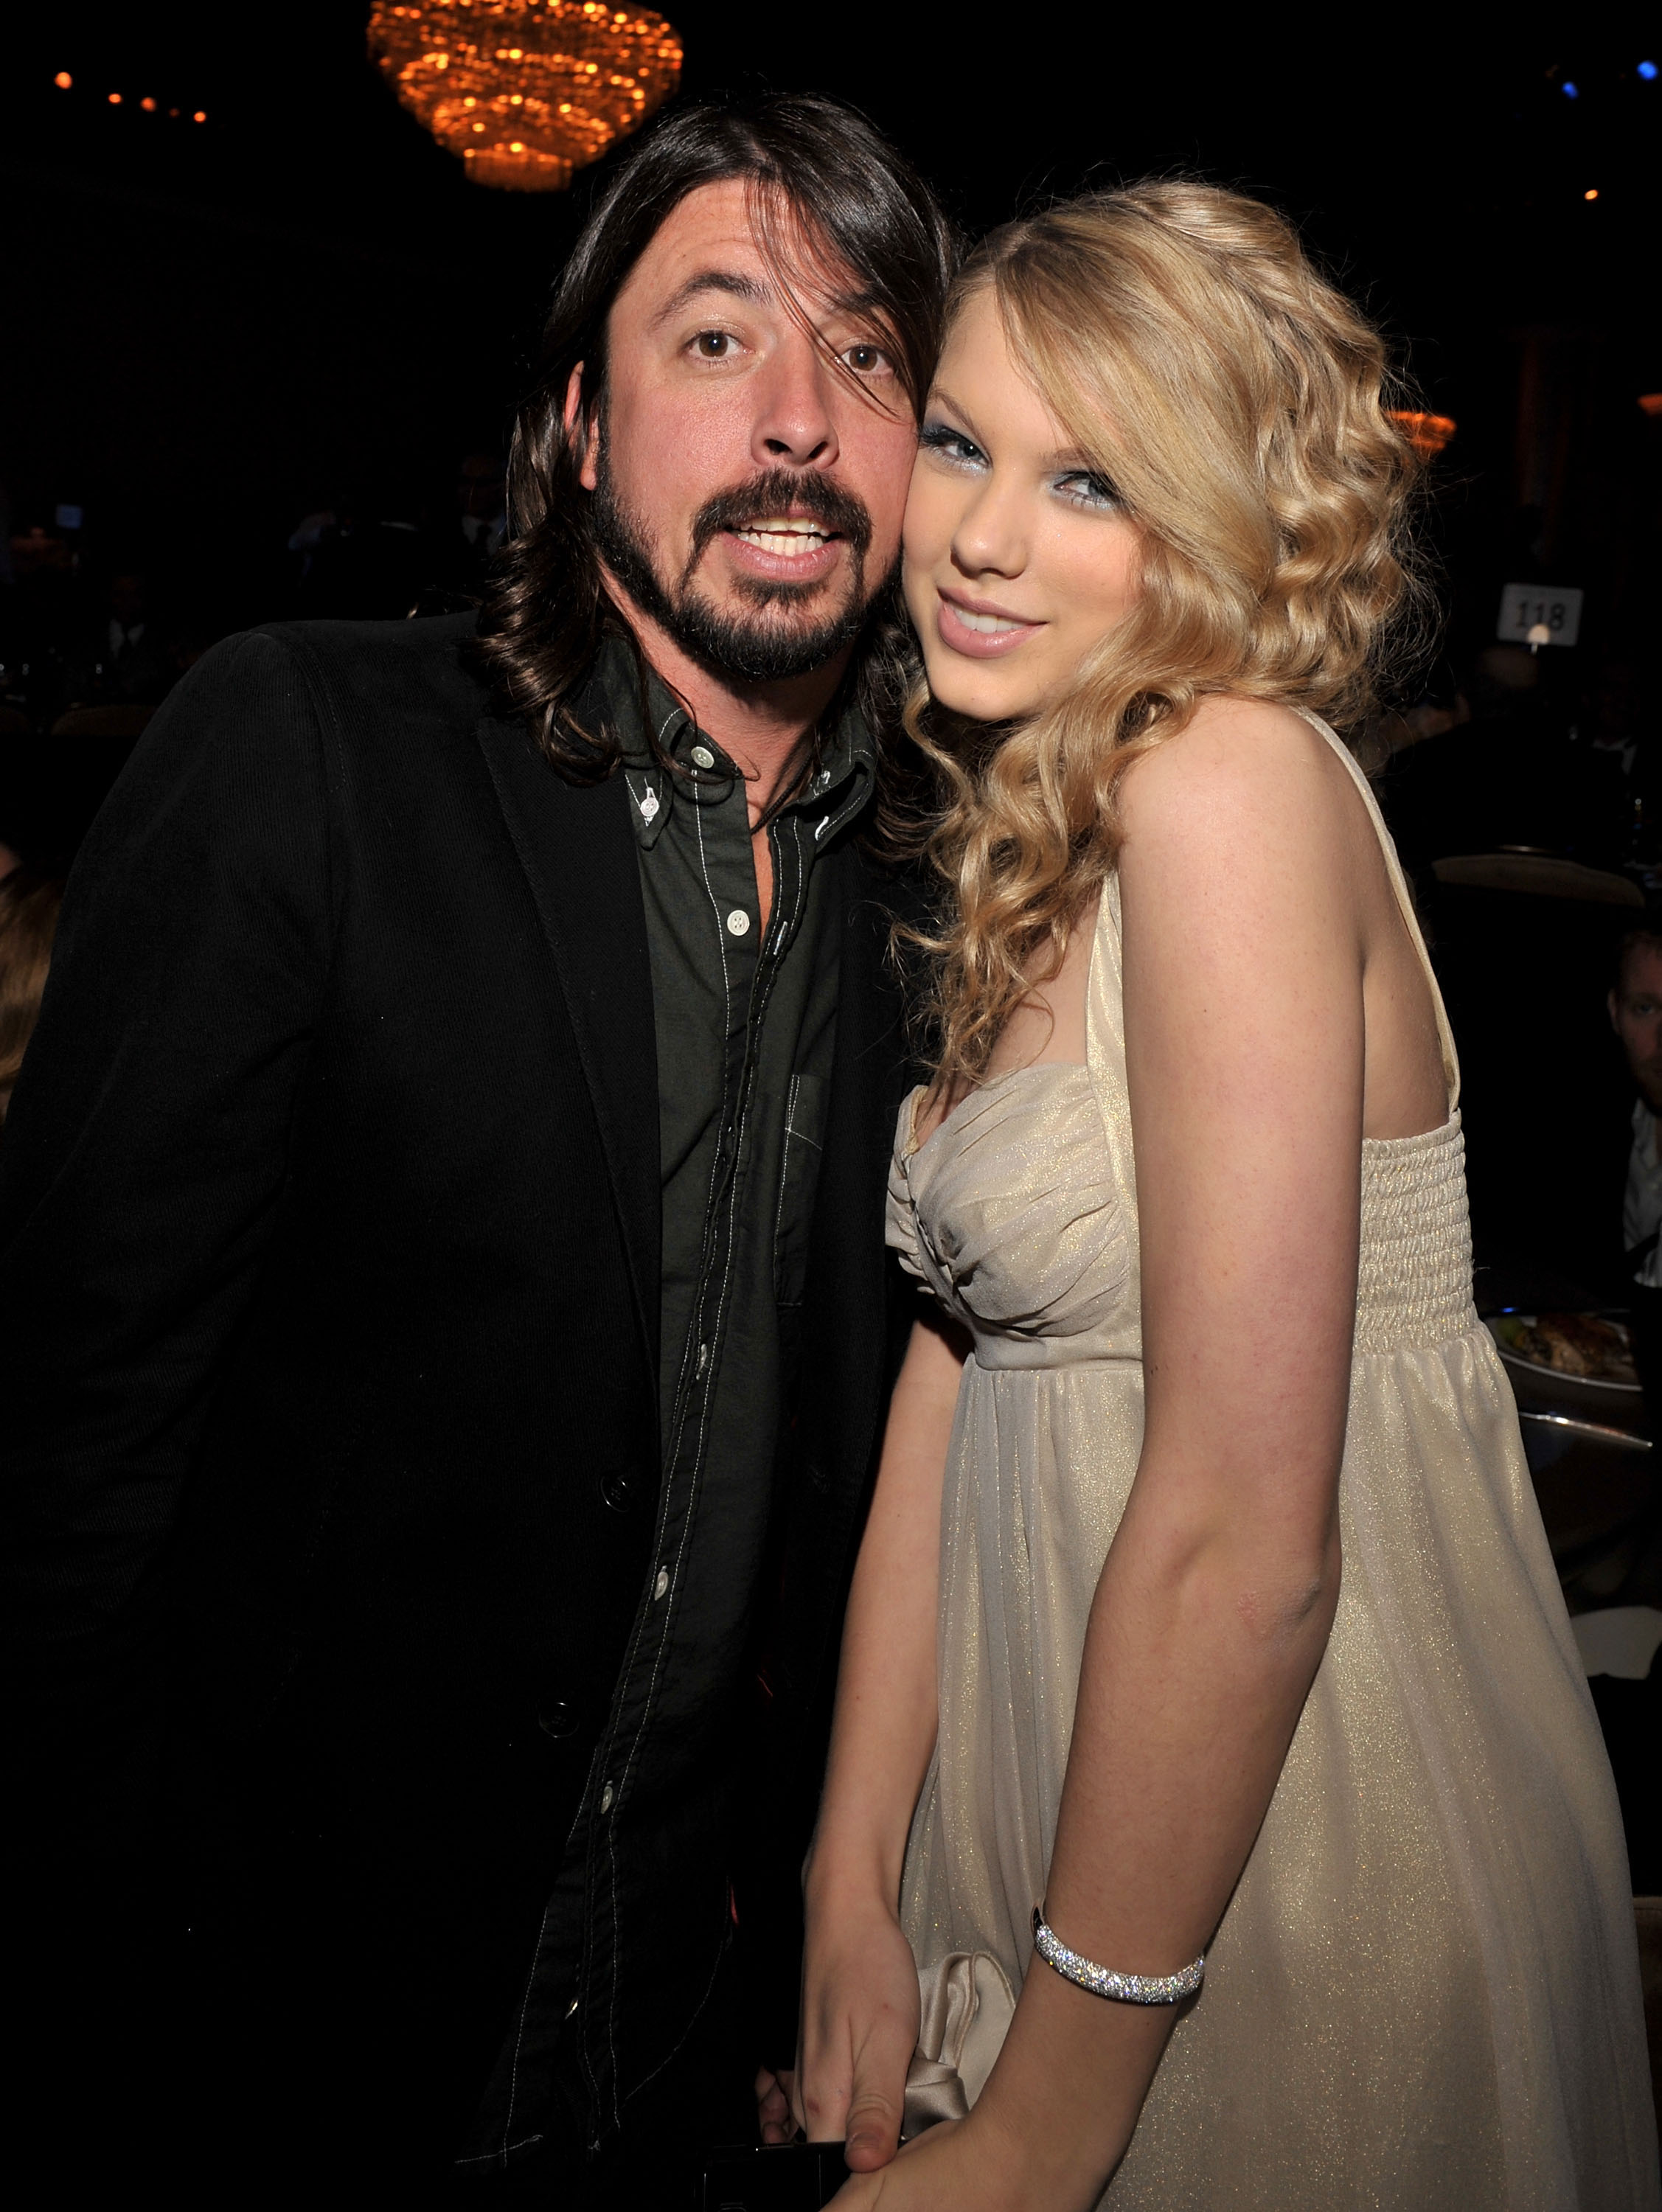 David Grohl et Taylor Swift à la soirée Clive Davis Pre-Grammy à Los Angeles, Californie, le 9 février 2008 | Source : Getty Images